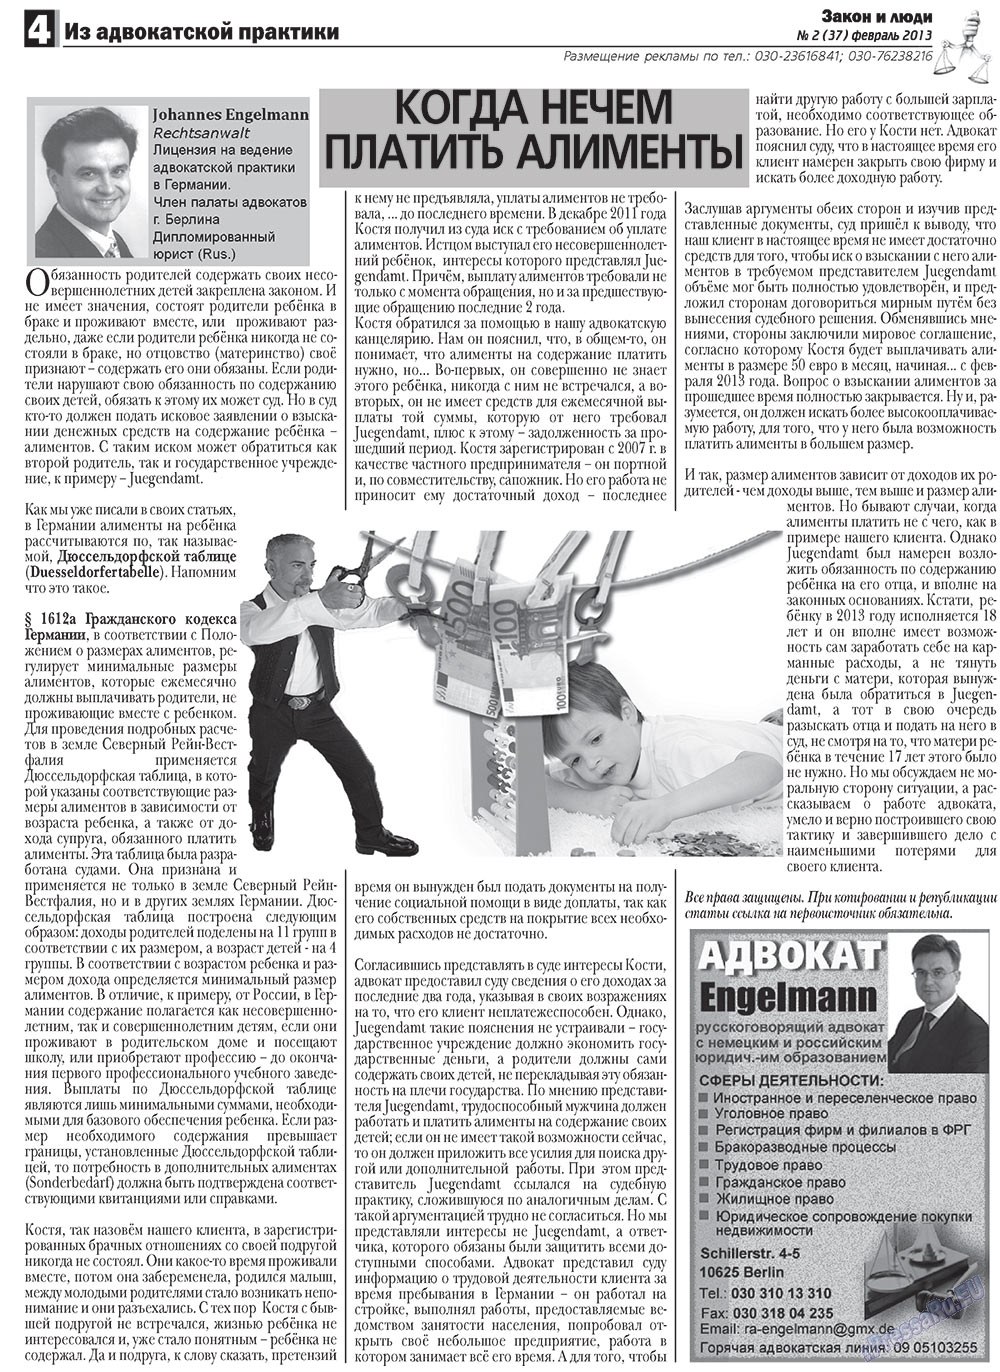 Закон и люди, газета. 2013 №2 стр.4